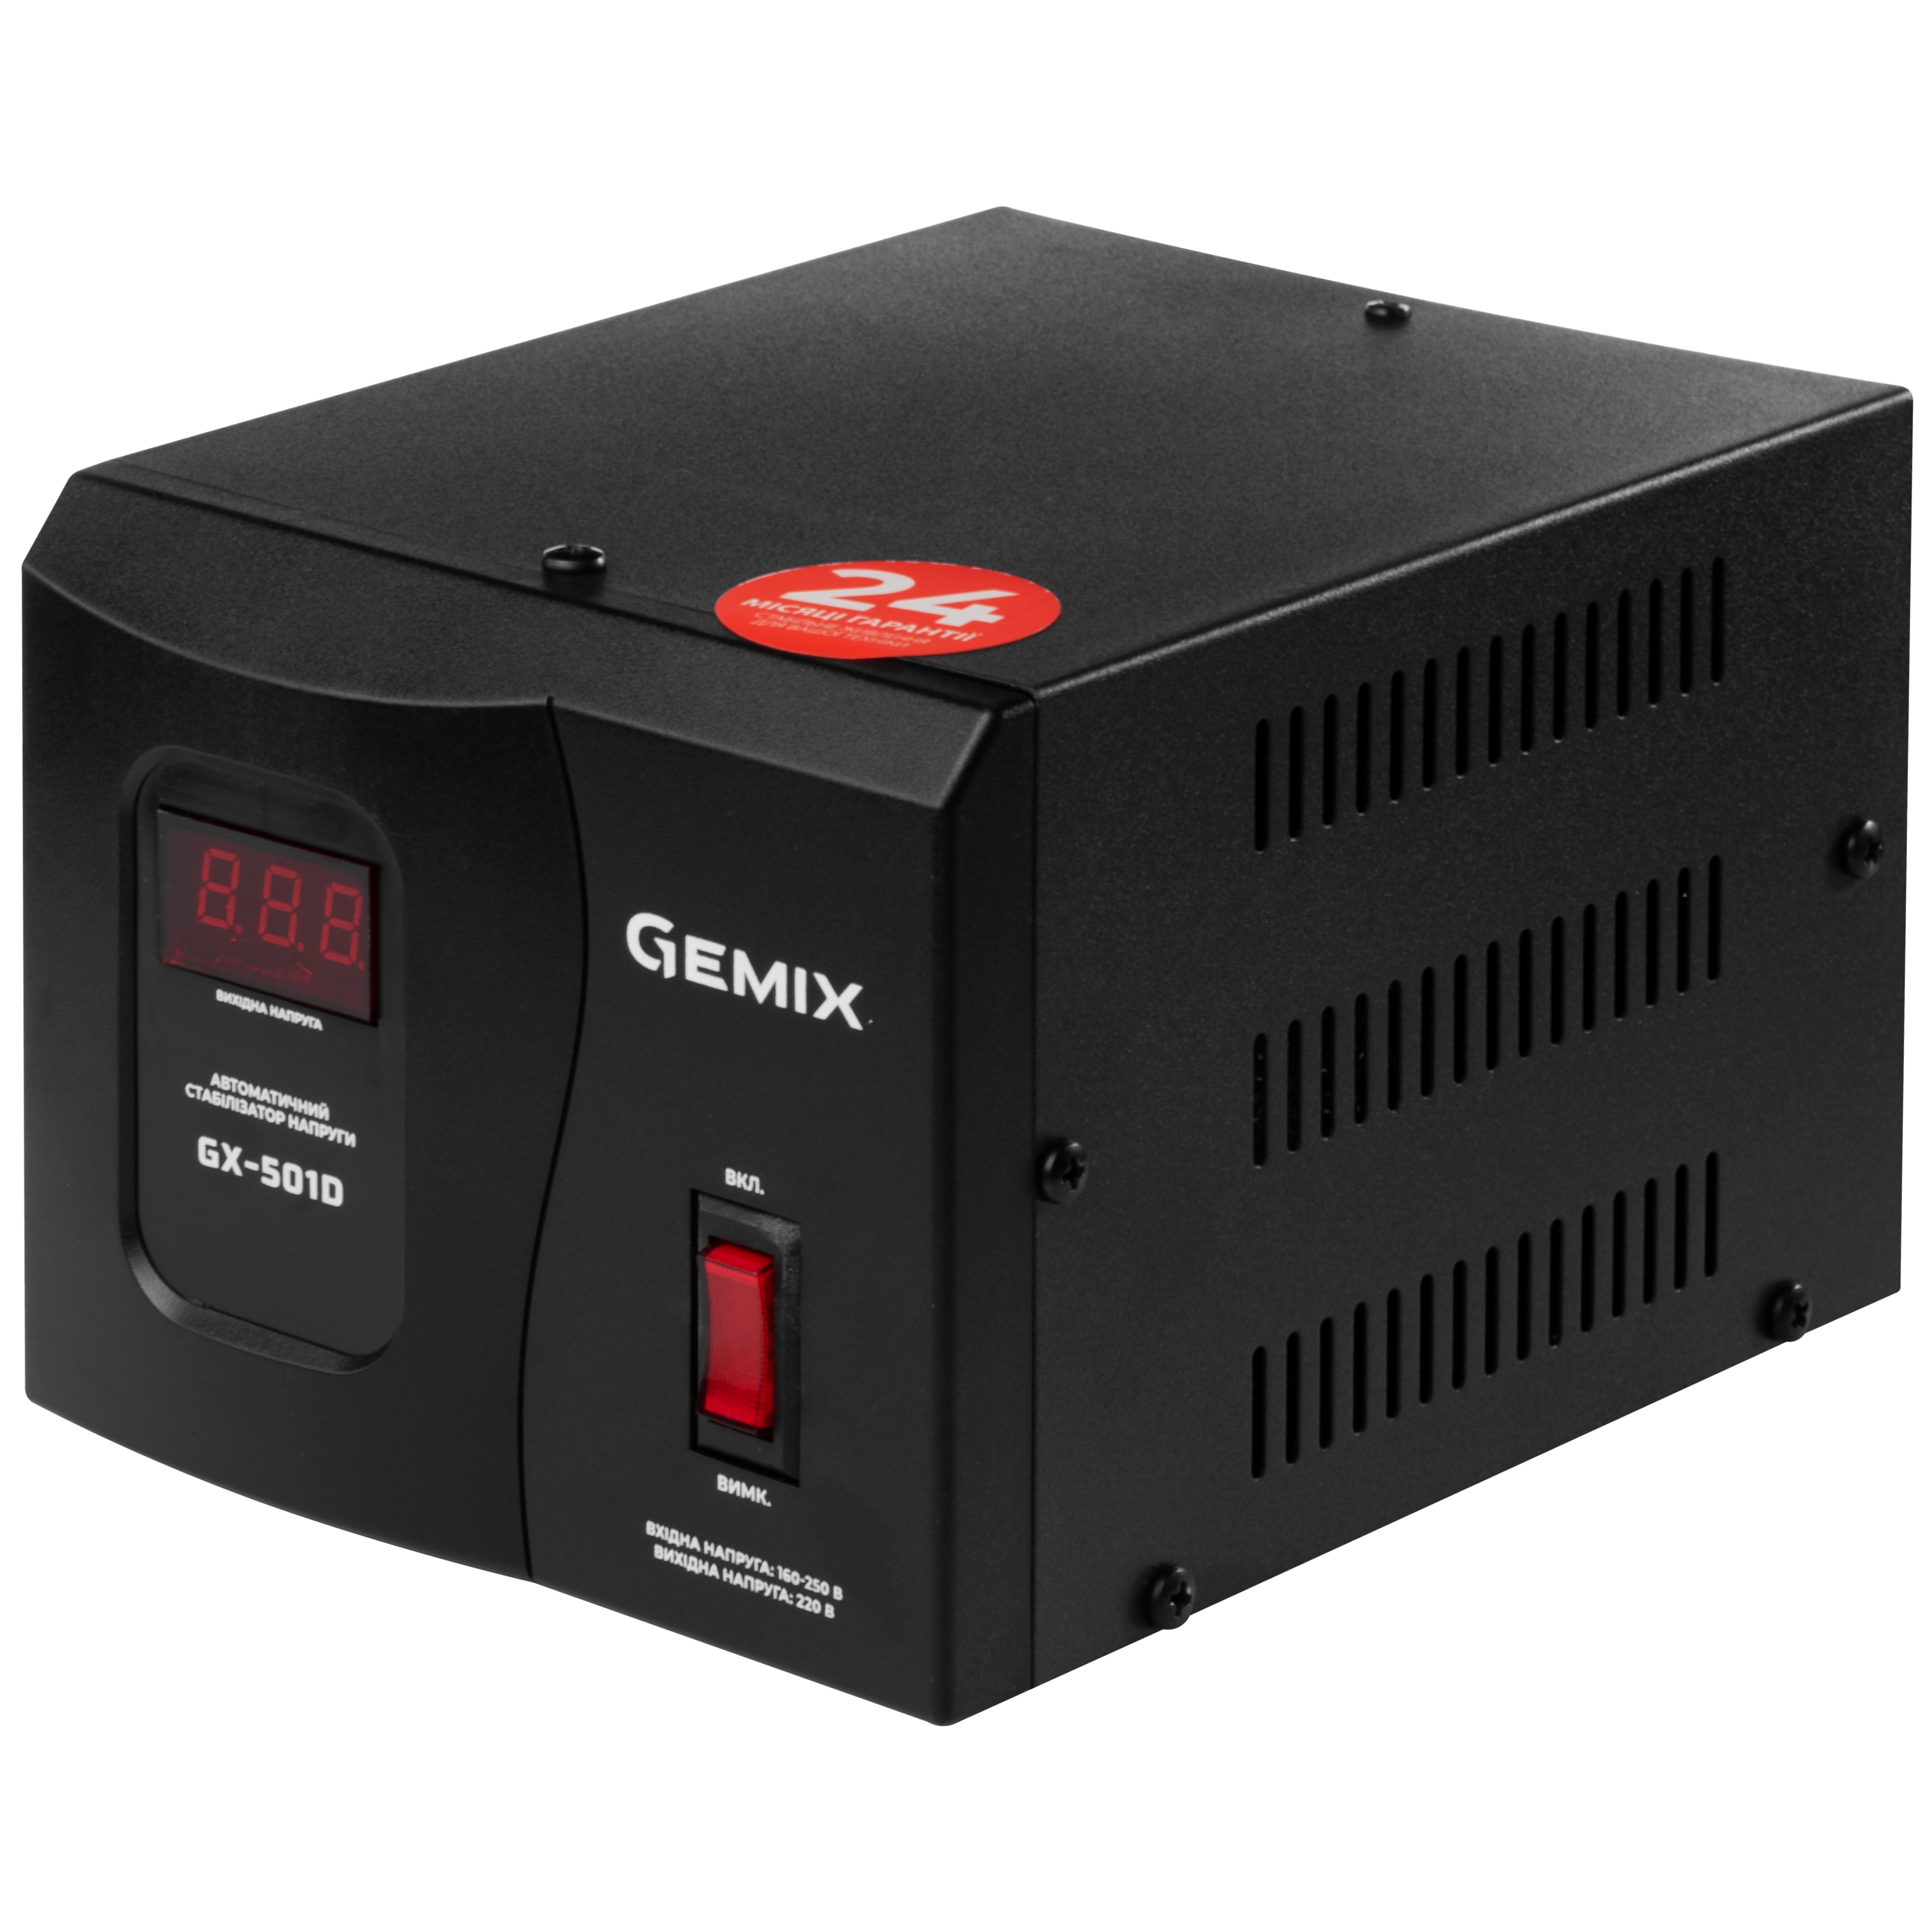 Купить бытовой стабилизатор Gemix GX-501D в Киеве